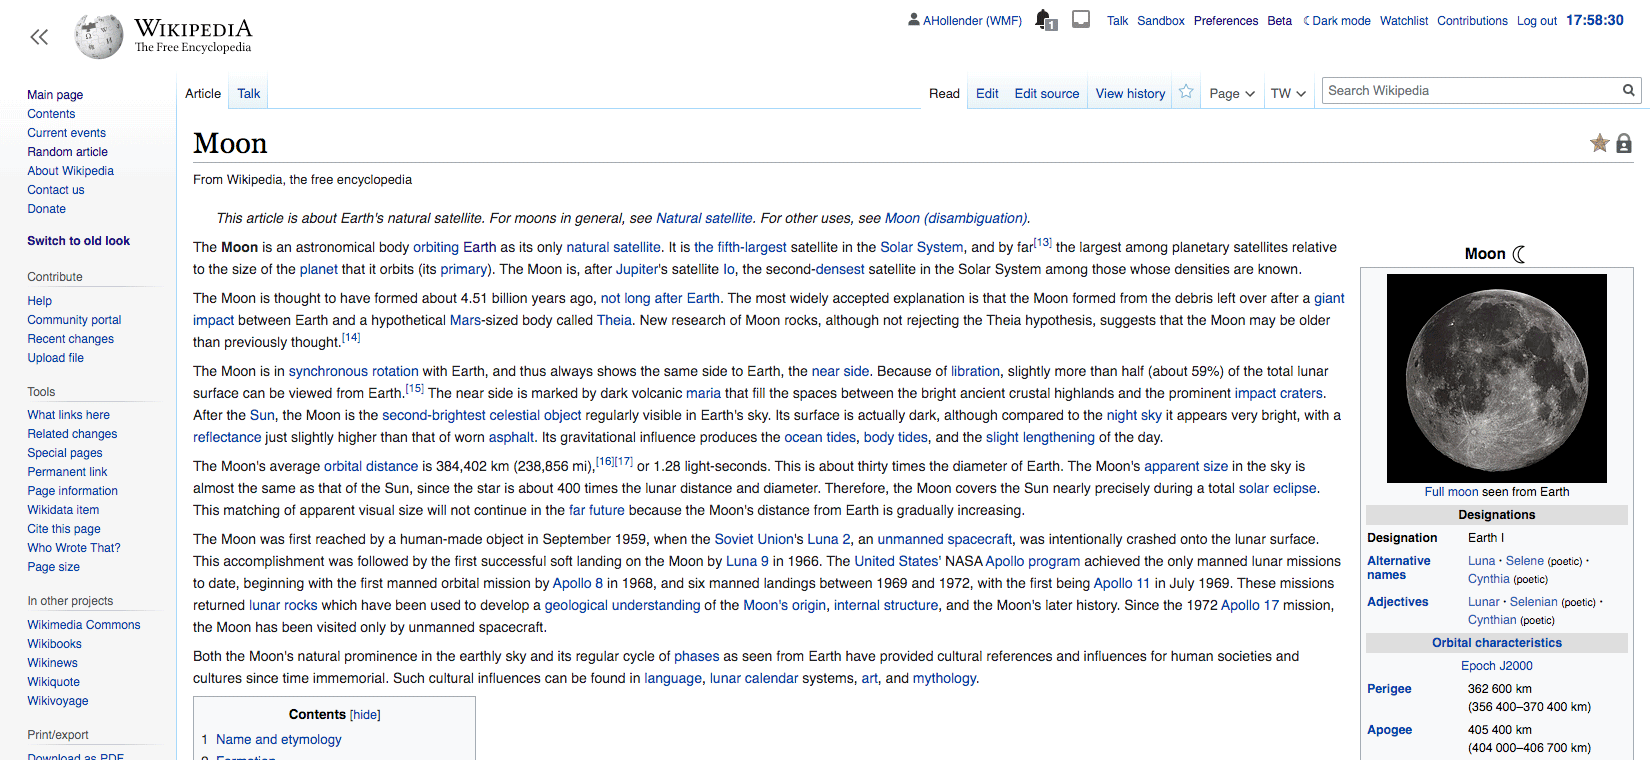 Wikipedian artikkeli eri leveyksillä